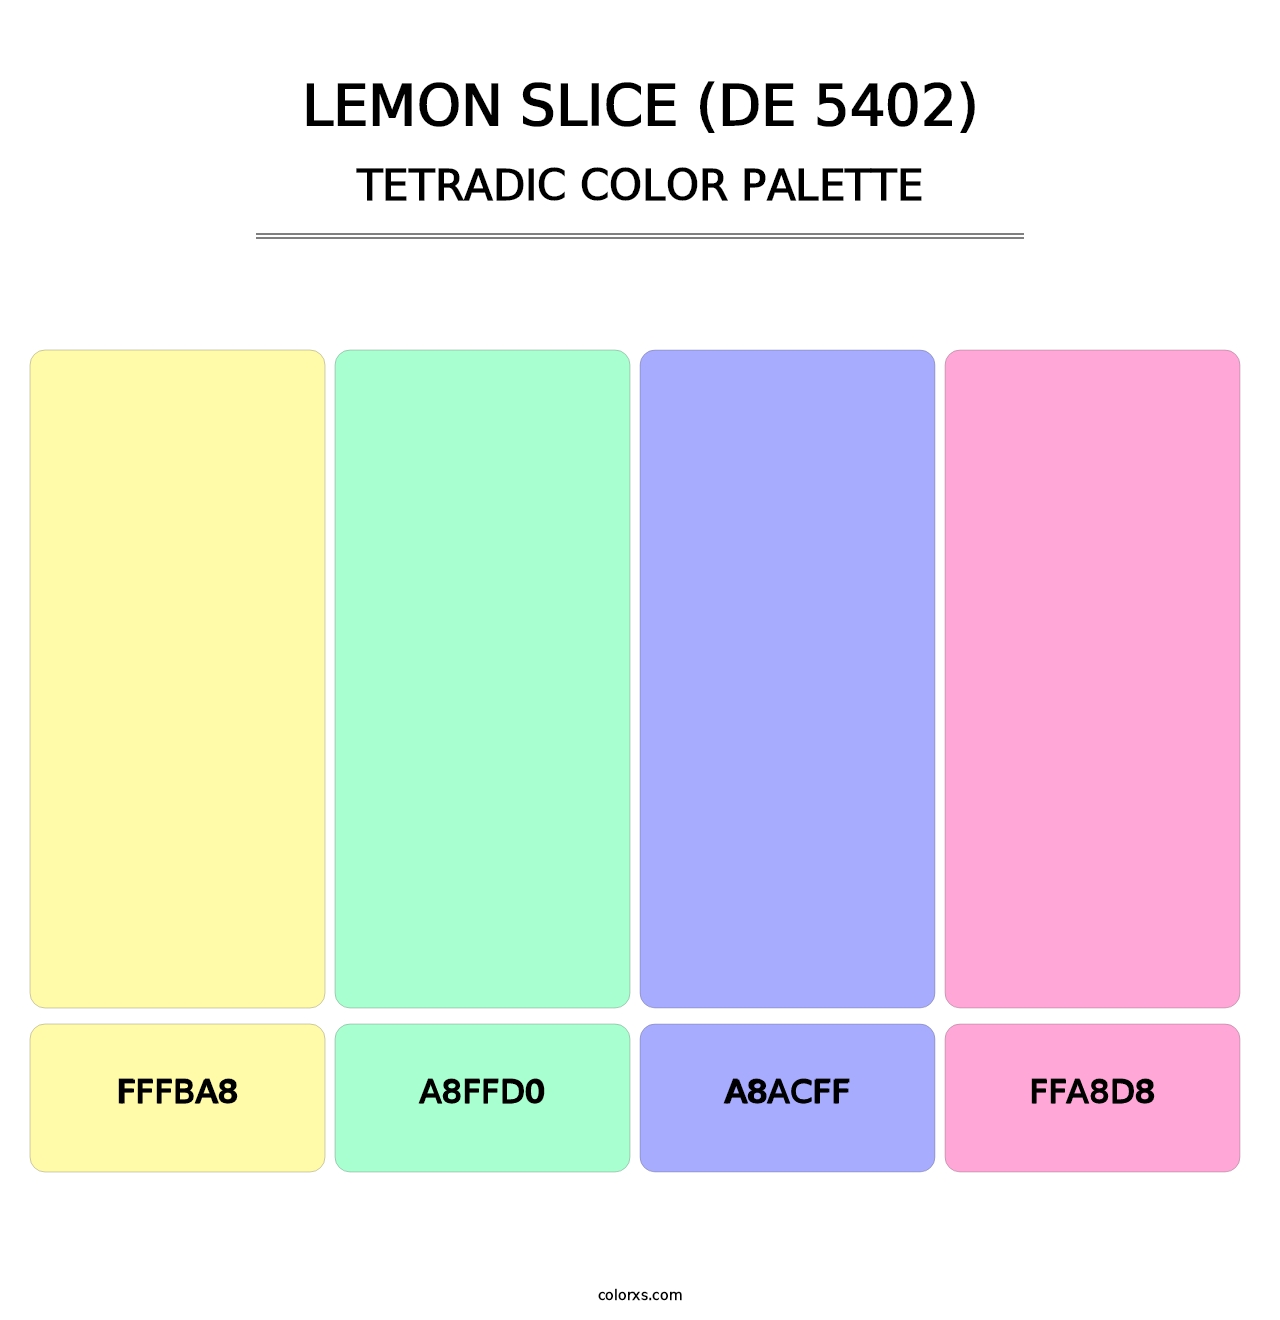 Lemon Slice (DE 5402) - Tetradic Color Palette